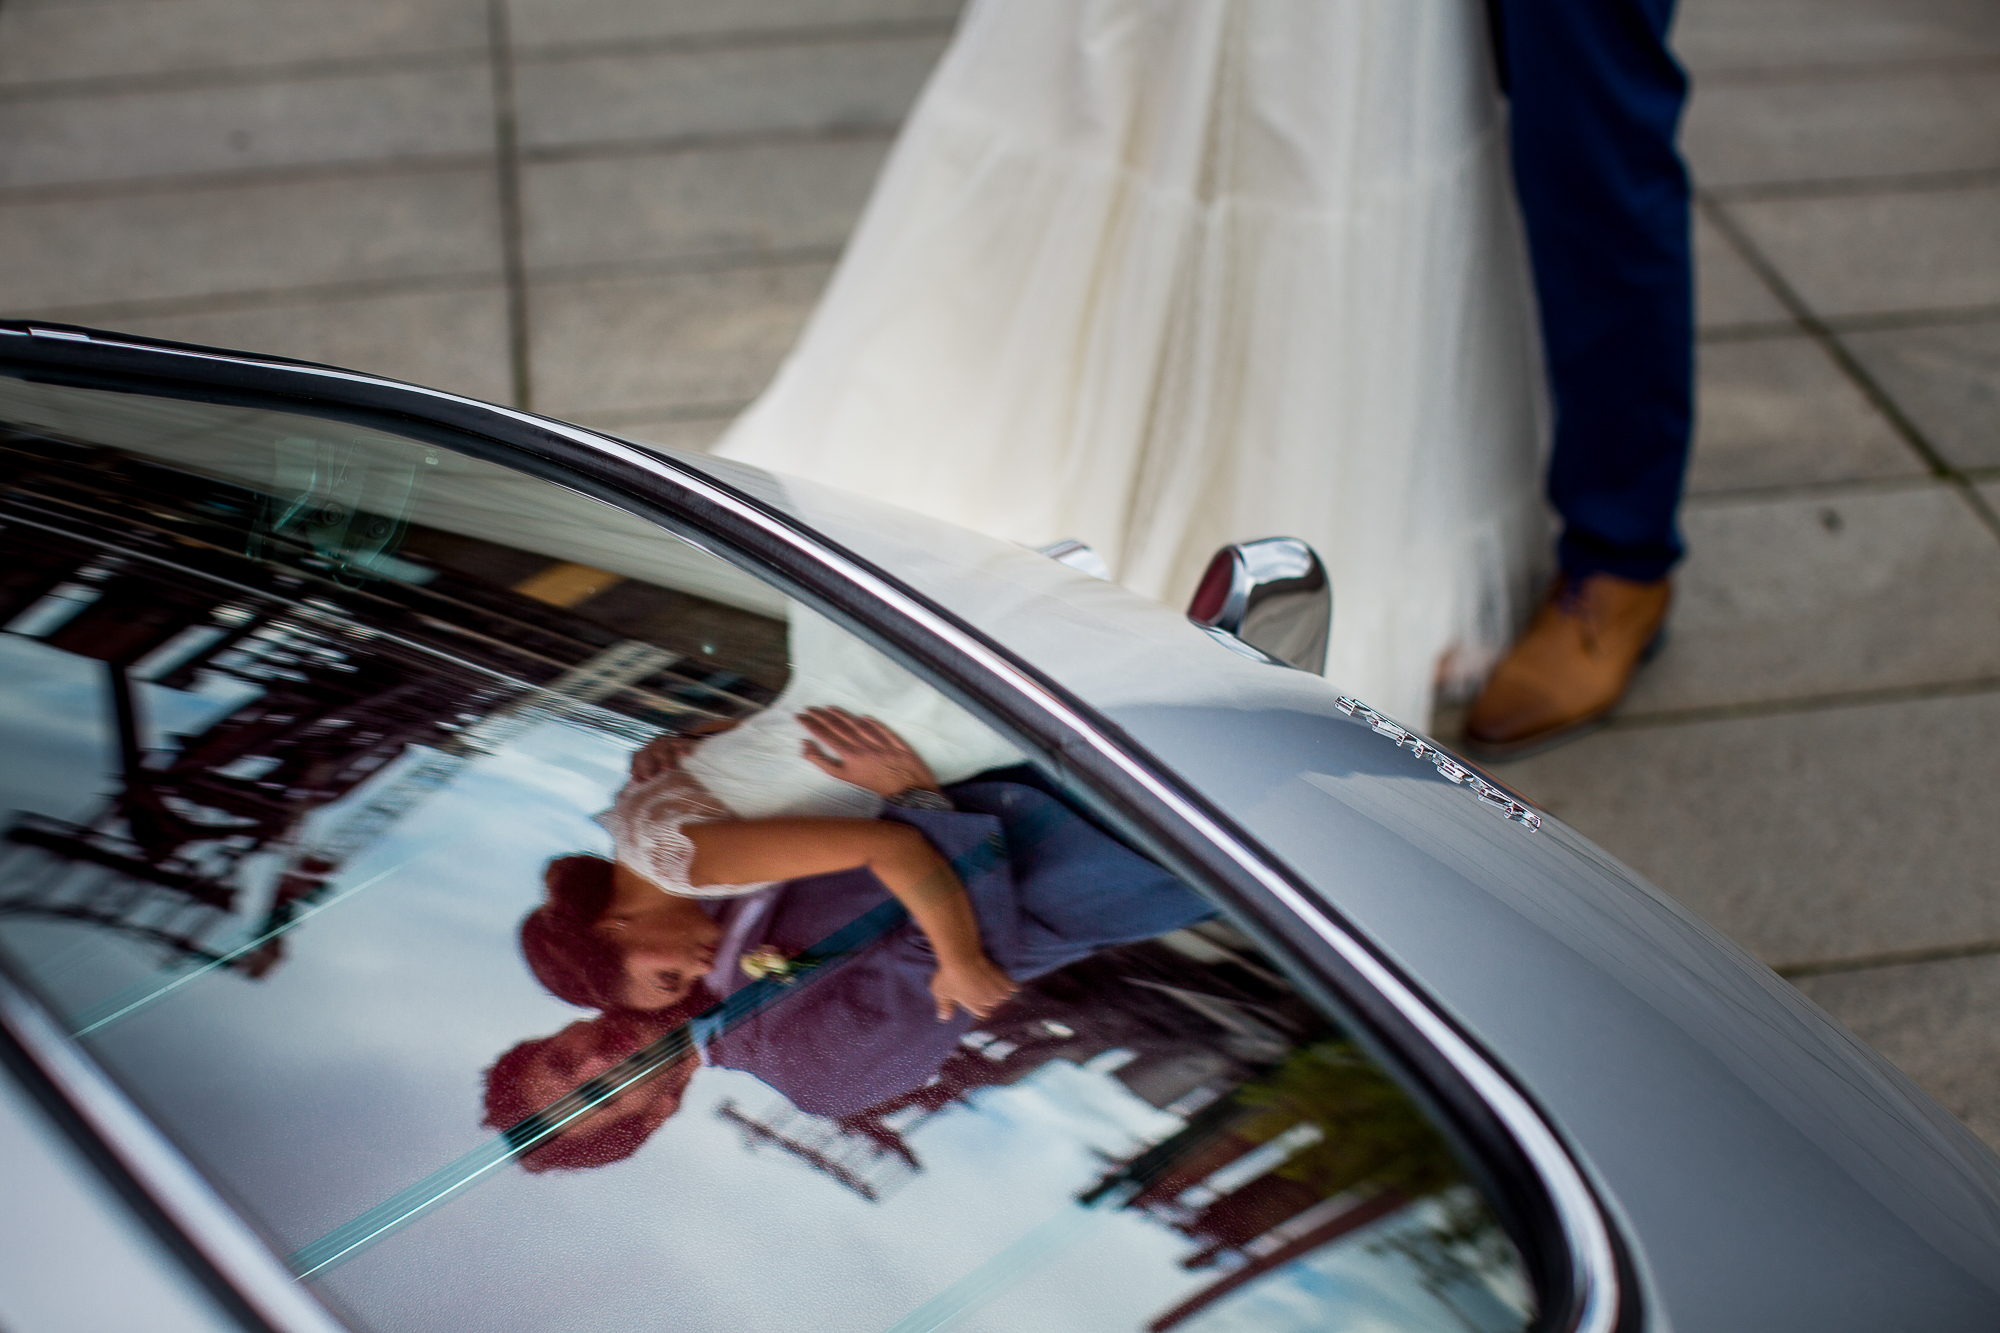 Luxemburg, Hochzeit, Hochzeitsauto, spiegel, hochzeitskleid, in love, verliebt, verheiratet, dreamwedding, Hochzeitspaar